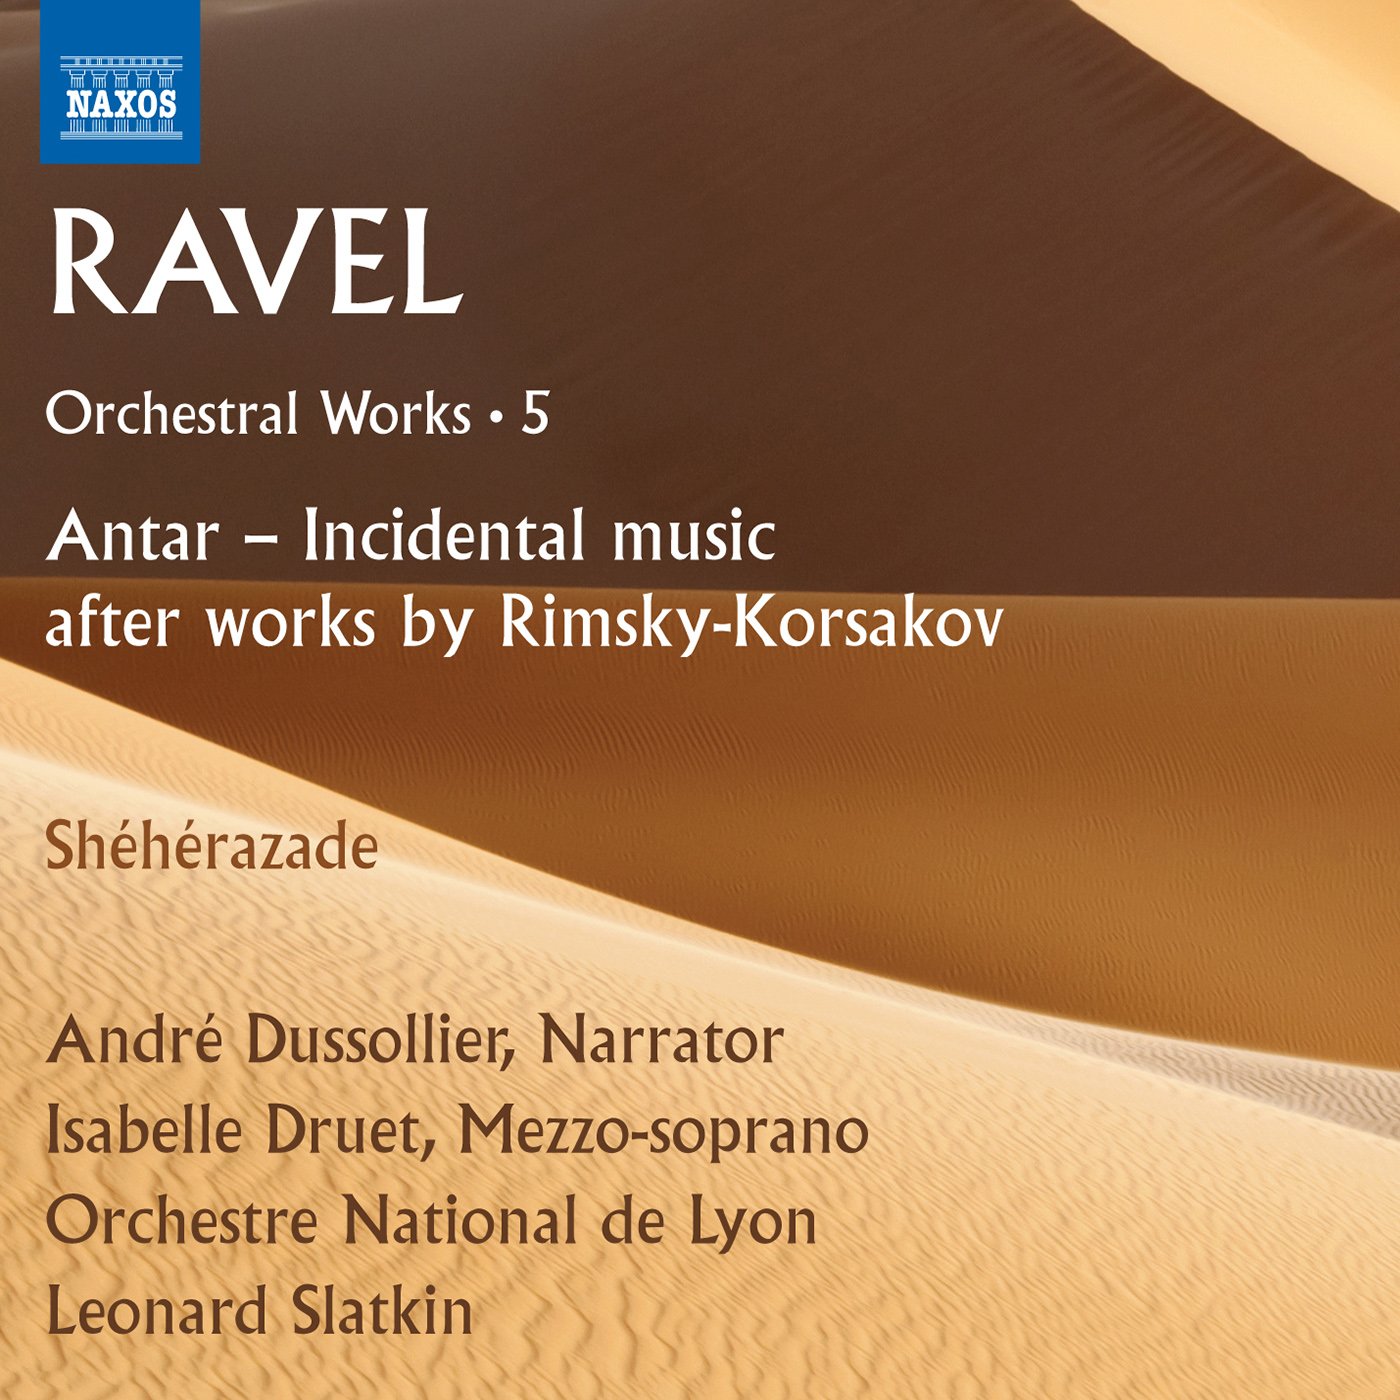 RAVEL, M.: Orchestral Works, Vol. 5  Antar after RimskyKorsakov  She he razade Dussollier, Druet, Lyon National Orchestra, Slatkin